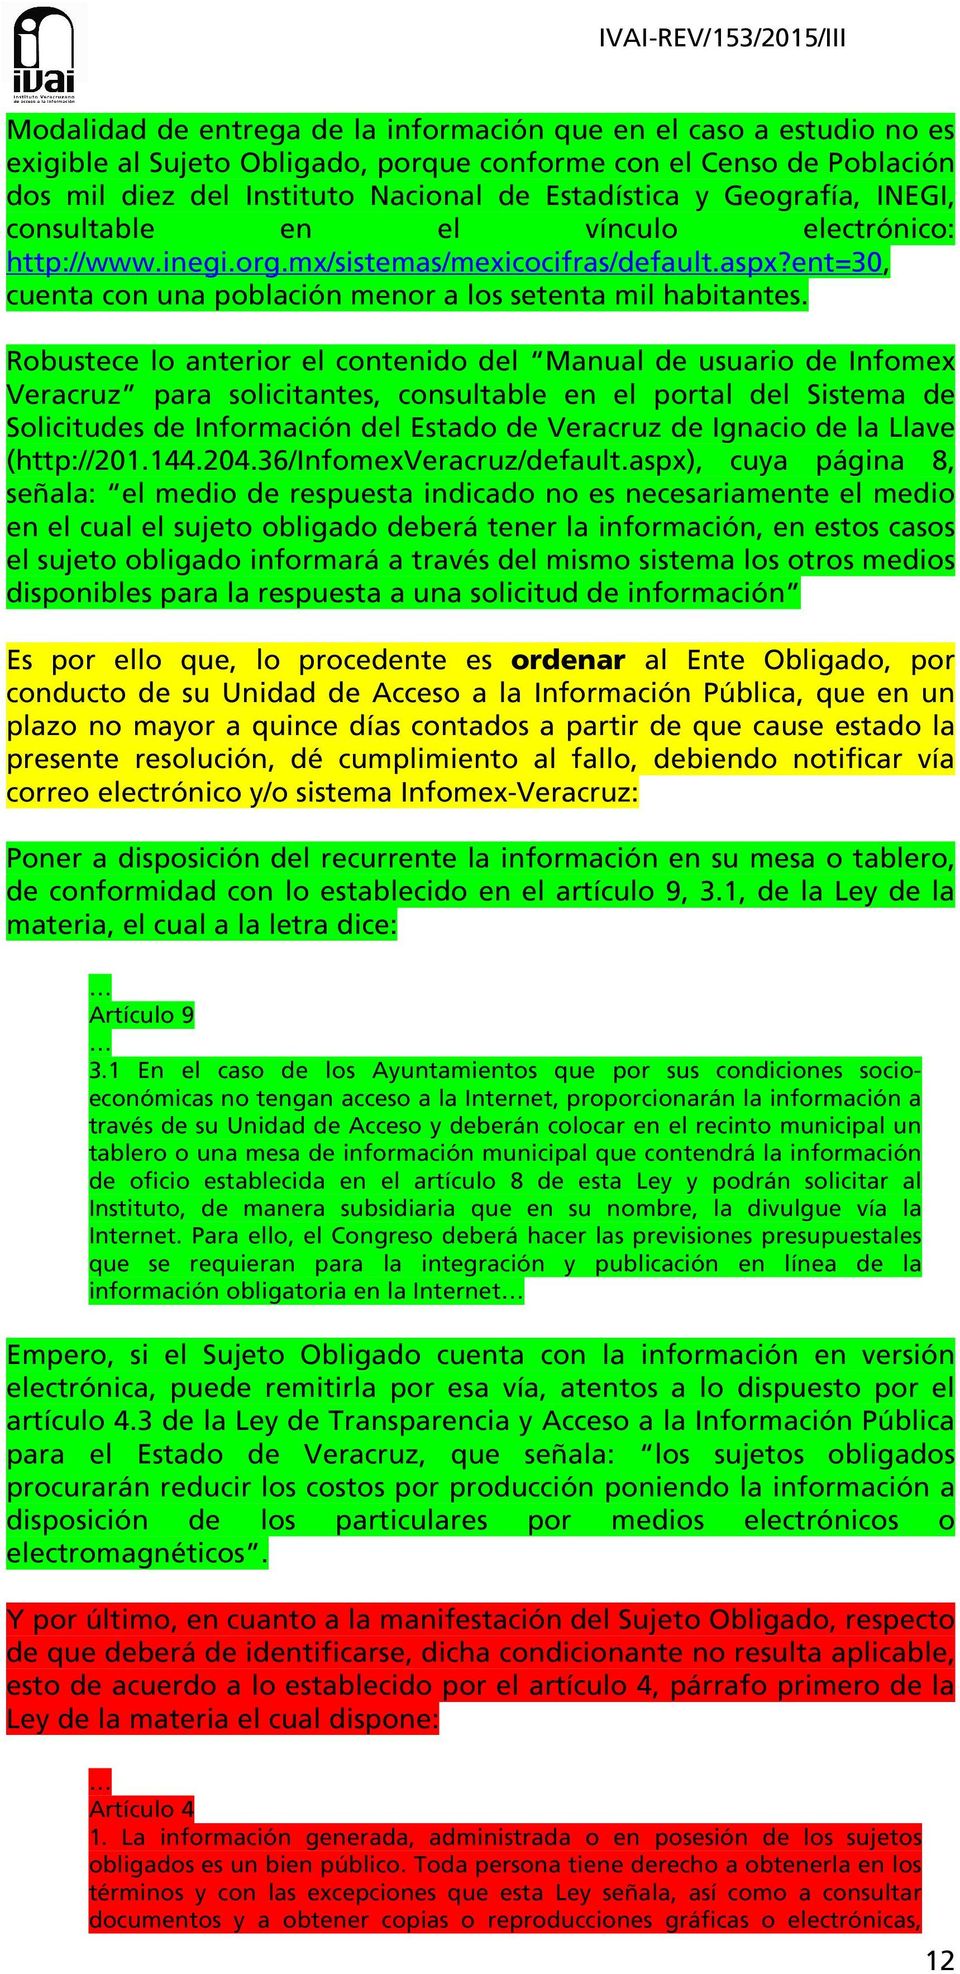 Robustece lo anterior el contenido del Manual de usuario de Infomex Veracruz para solicitantes, consultable en el portal del Sistema de Solicitudes de Información del Estado de Veracruz de Ignacio de